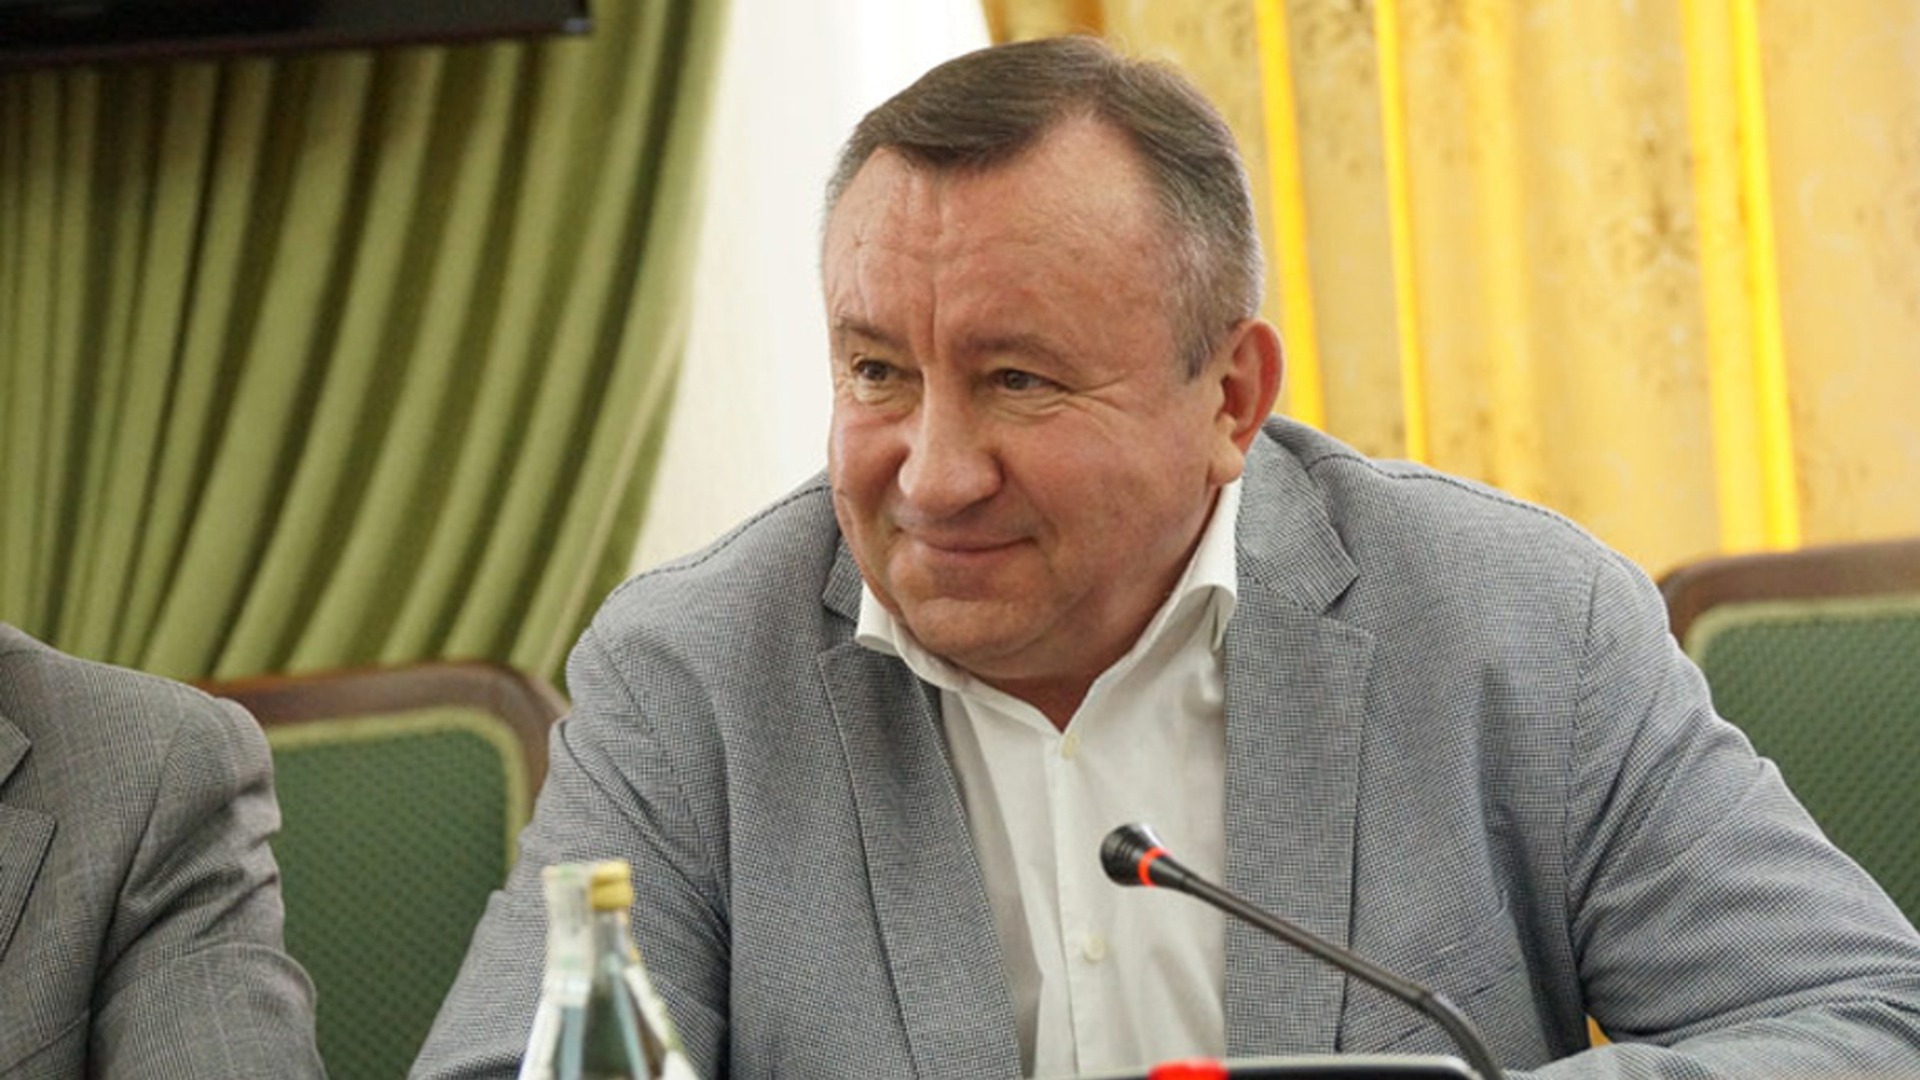 Гладков сообщил об уходе замгубернатора Владимира Боровика на пенсию